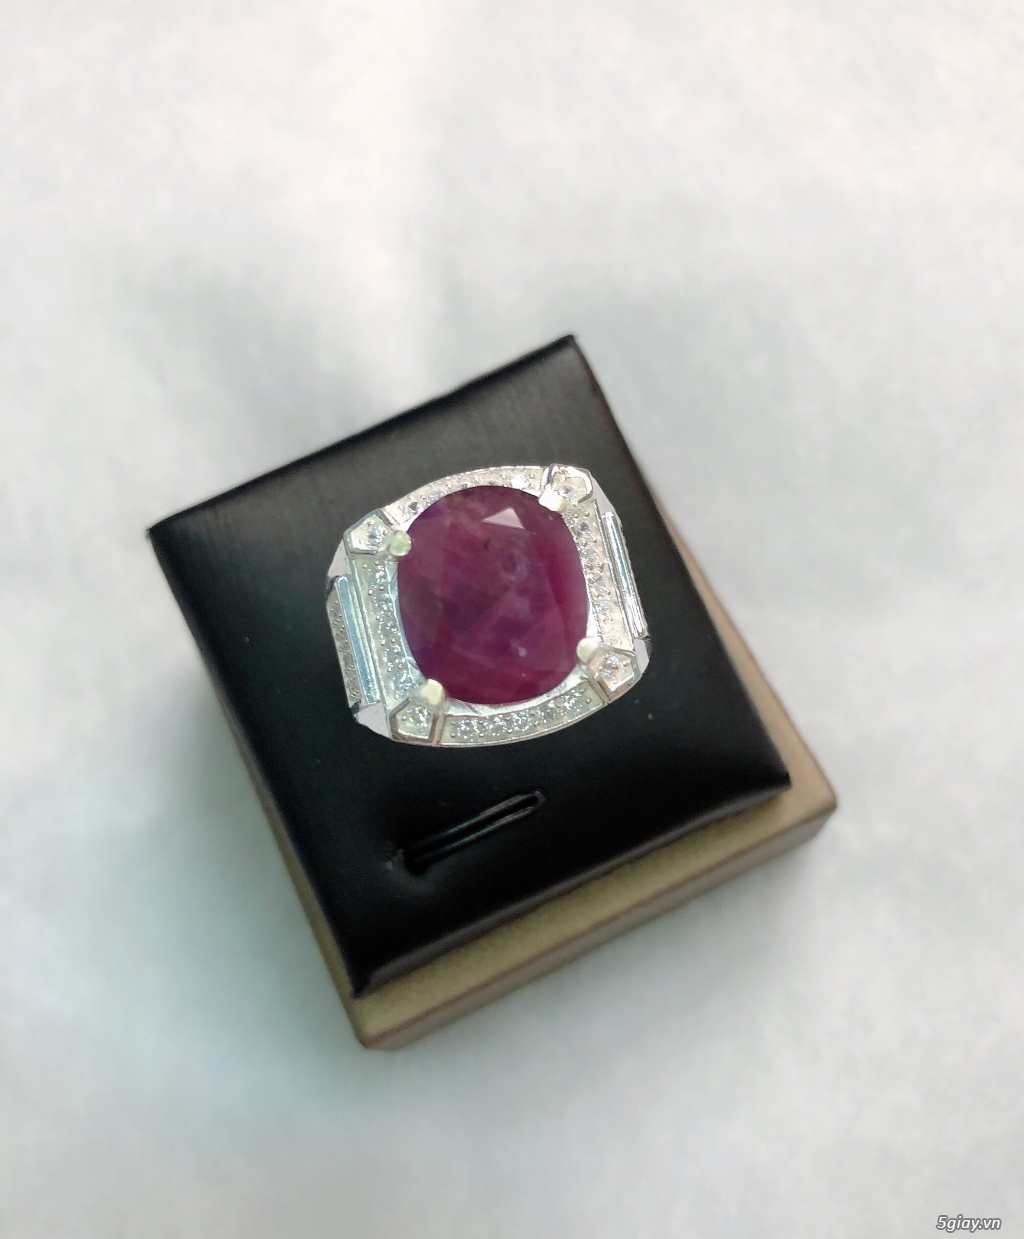 Nhẫn bạc cao cấp 950 gắn đá Ruby Saphia thiên nhiên 100% độc đẹp khủng - 10